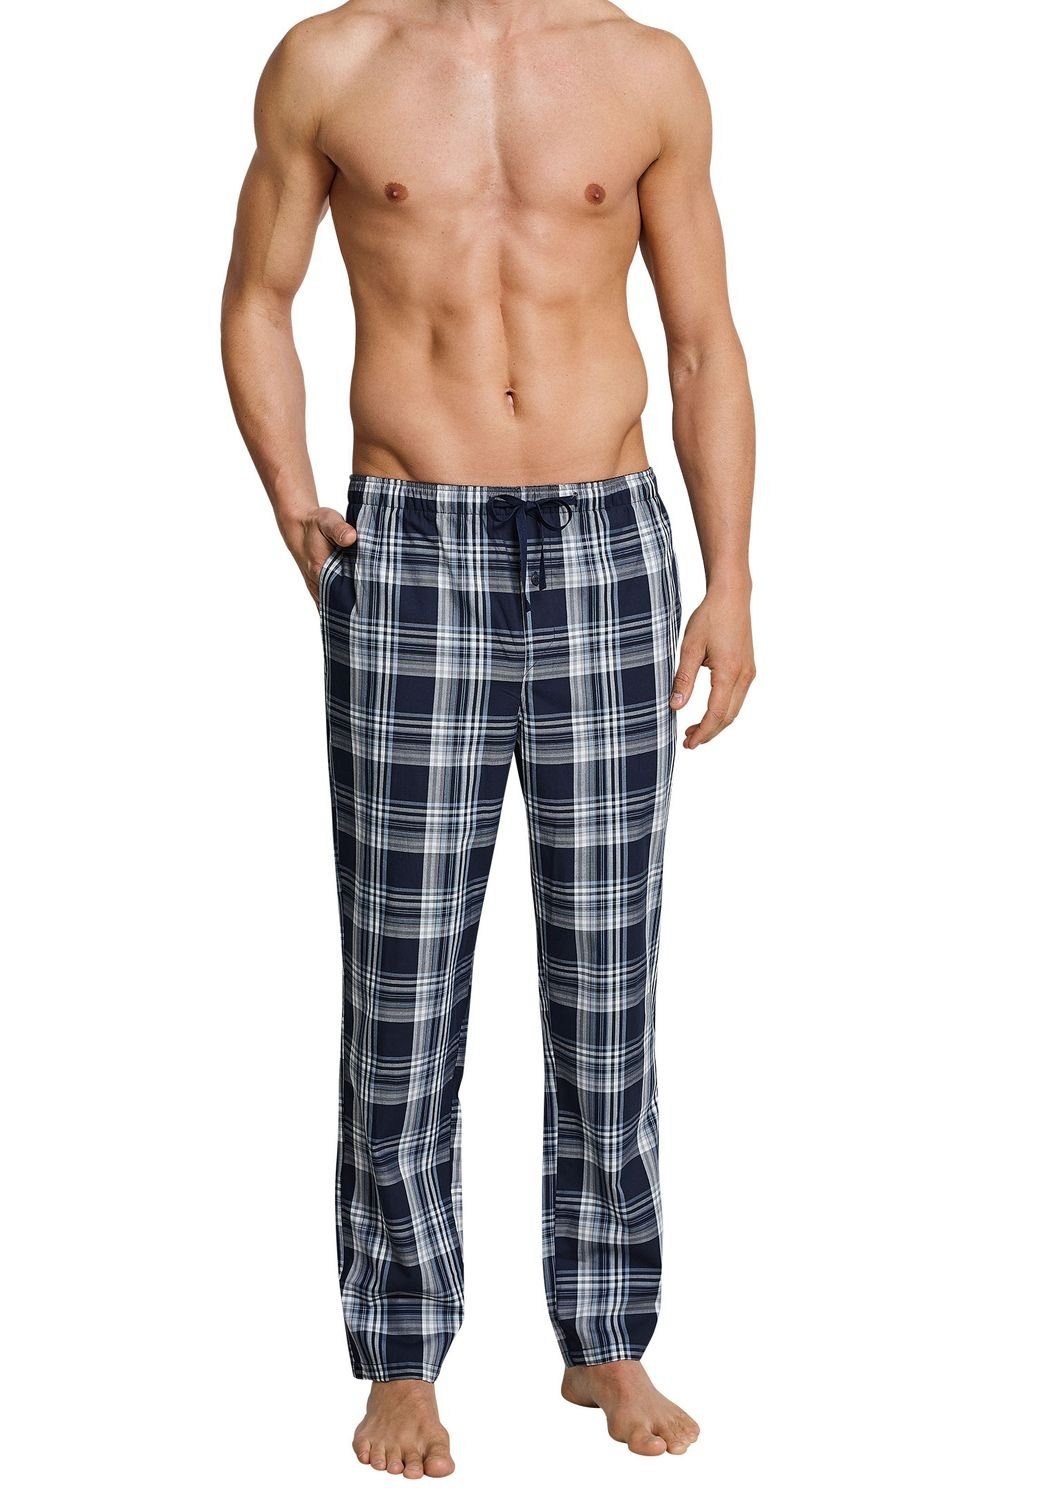 Baumwolle, 1 (nur tlg) kariert Taschen, seitliche Pyjamahose, Schlafhose, Hose, Sofahose Navy Mix+Relax Pyjama Schiesser reine